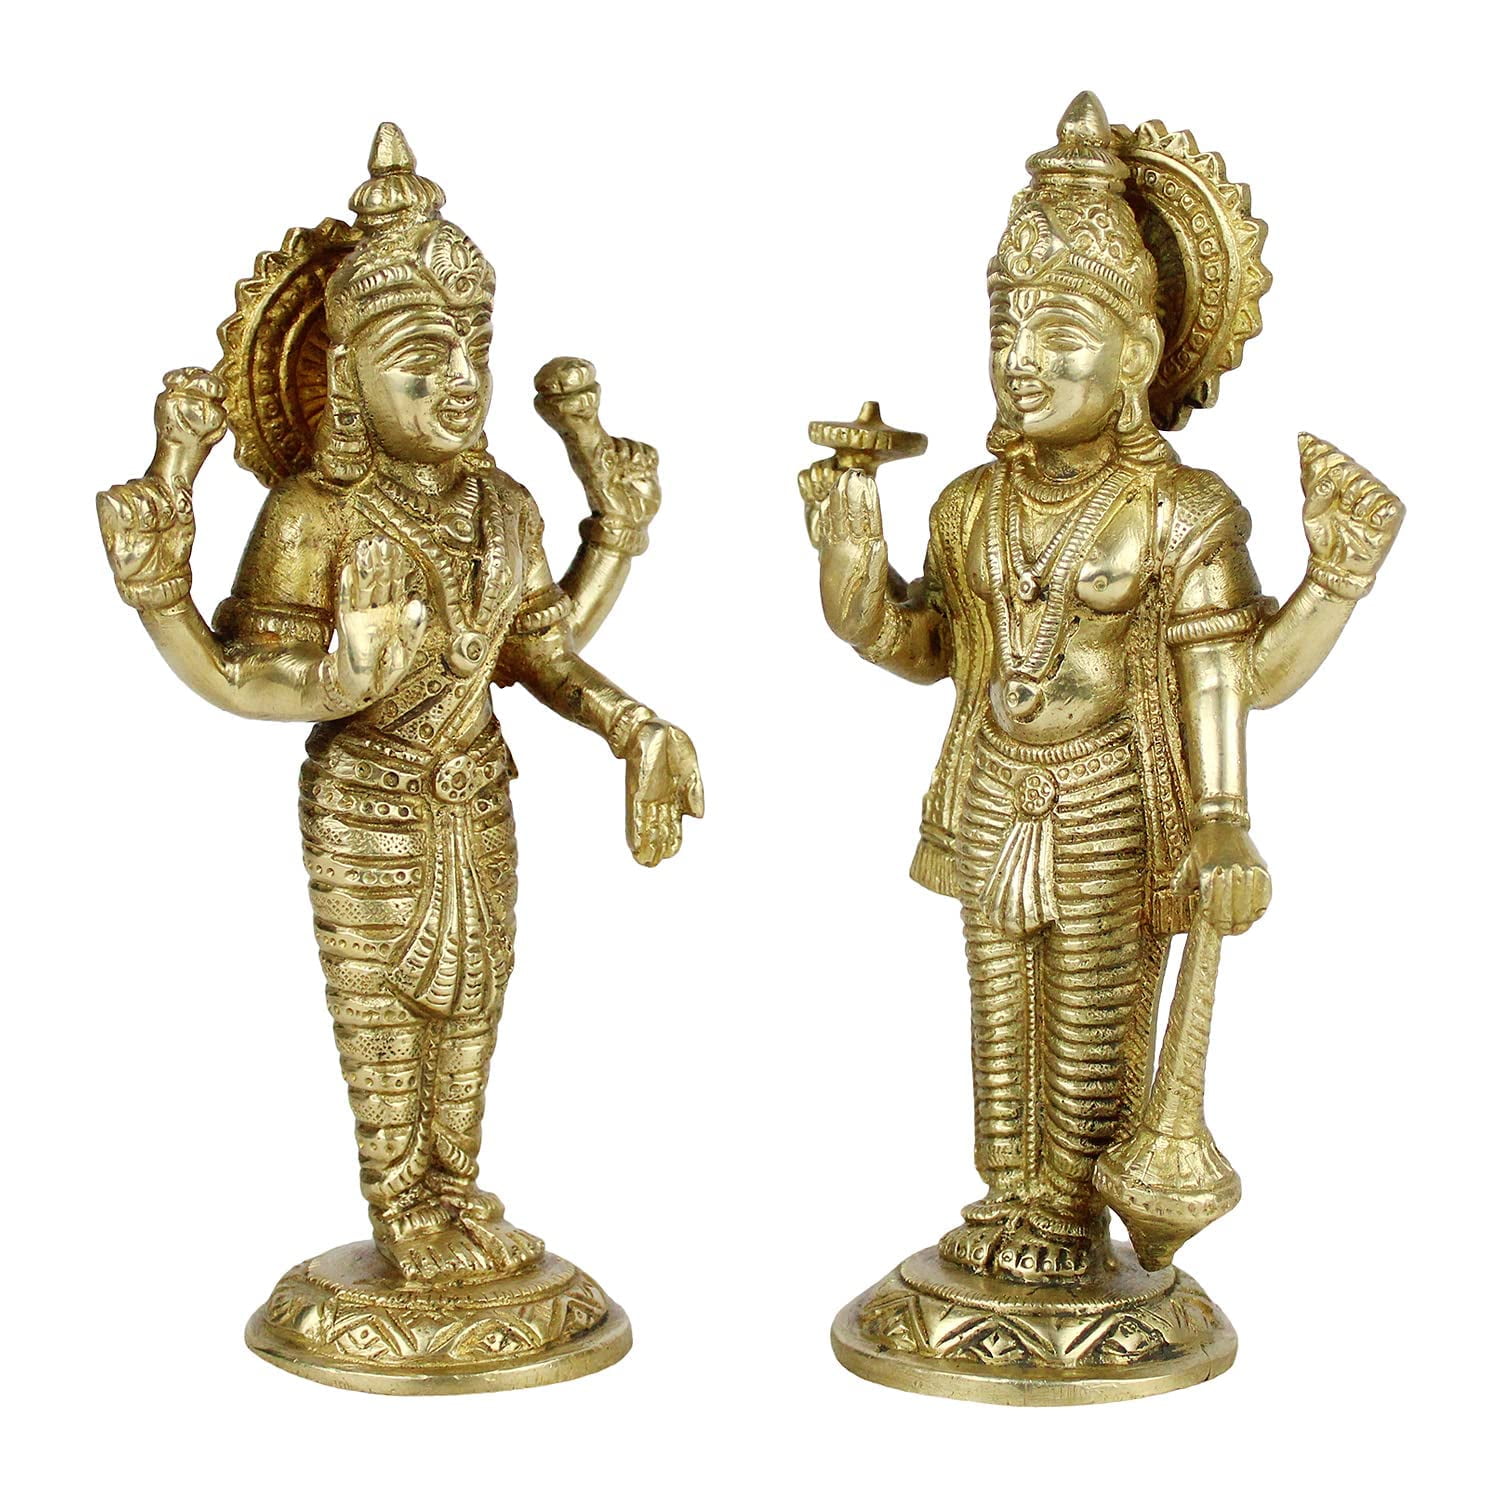 Brass World Brass Vishnu Laxmi Murti Lord Bhagwan Vishnu Narayan Lakshmi  Statue Idol Murti for Home Decor Mandir Pooja Goddess Laxmi Ji Height 7  Inch